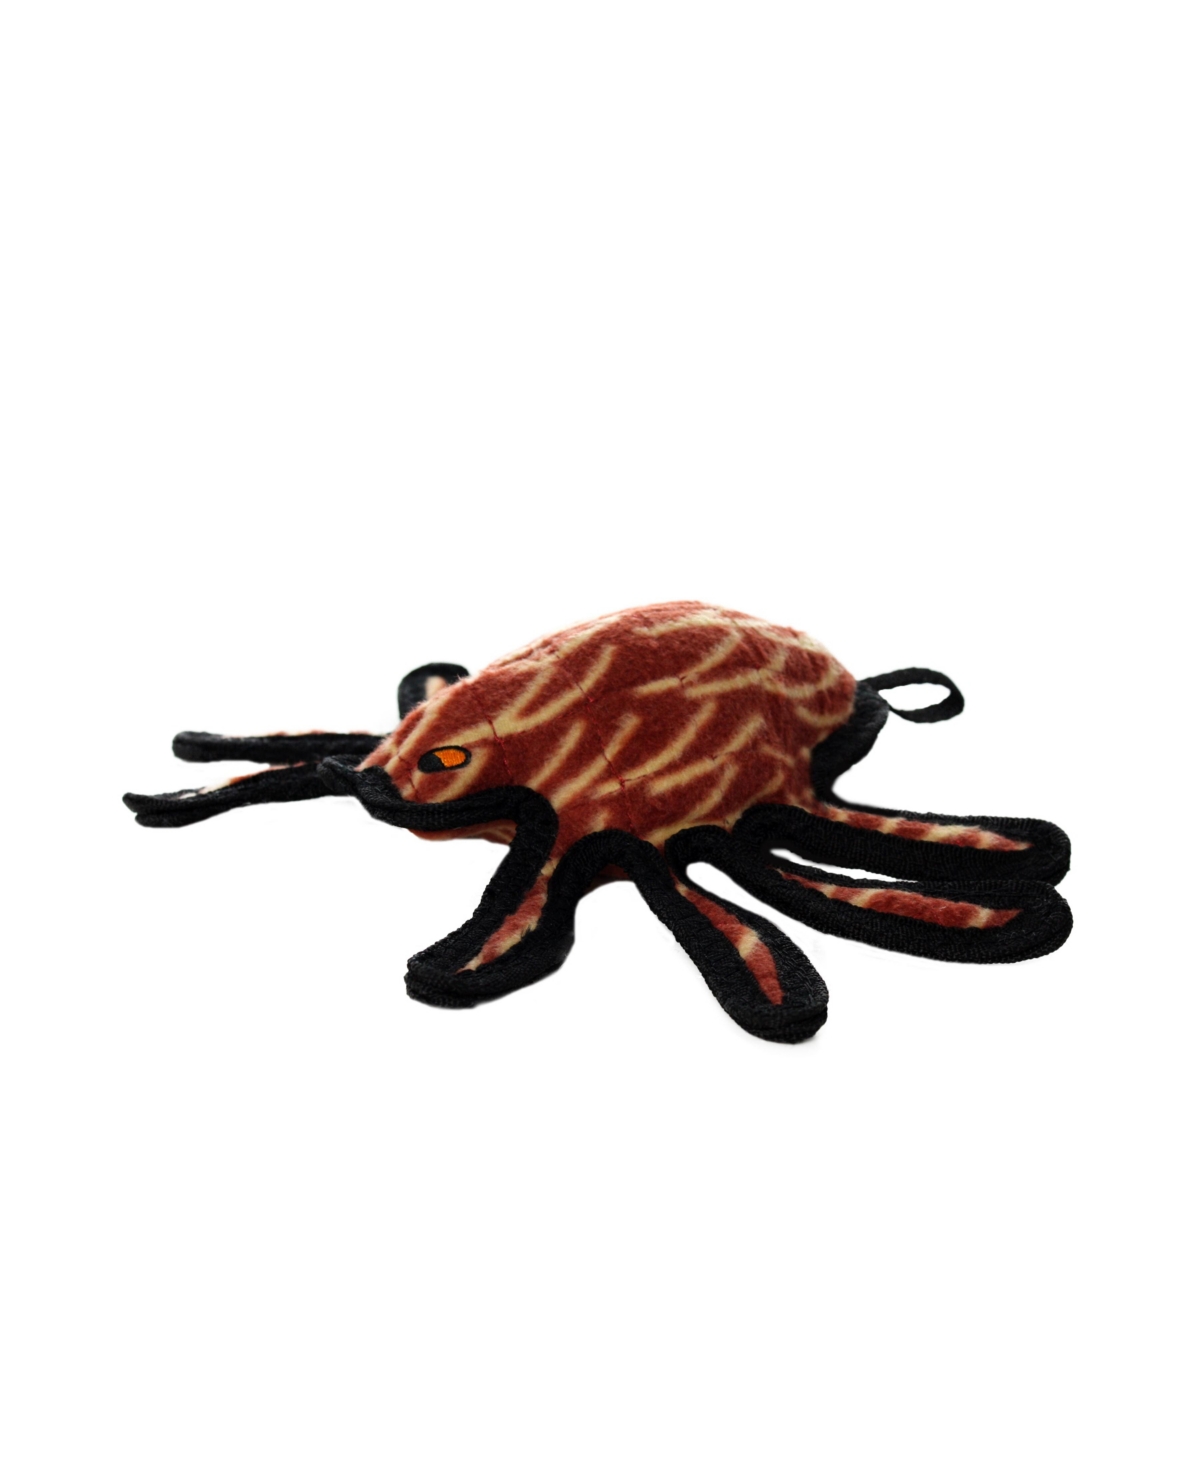 Desert Spider, Dog Toy - Medium Brown